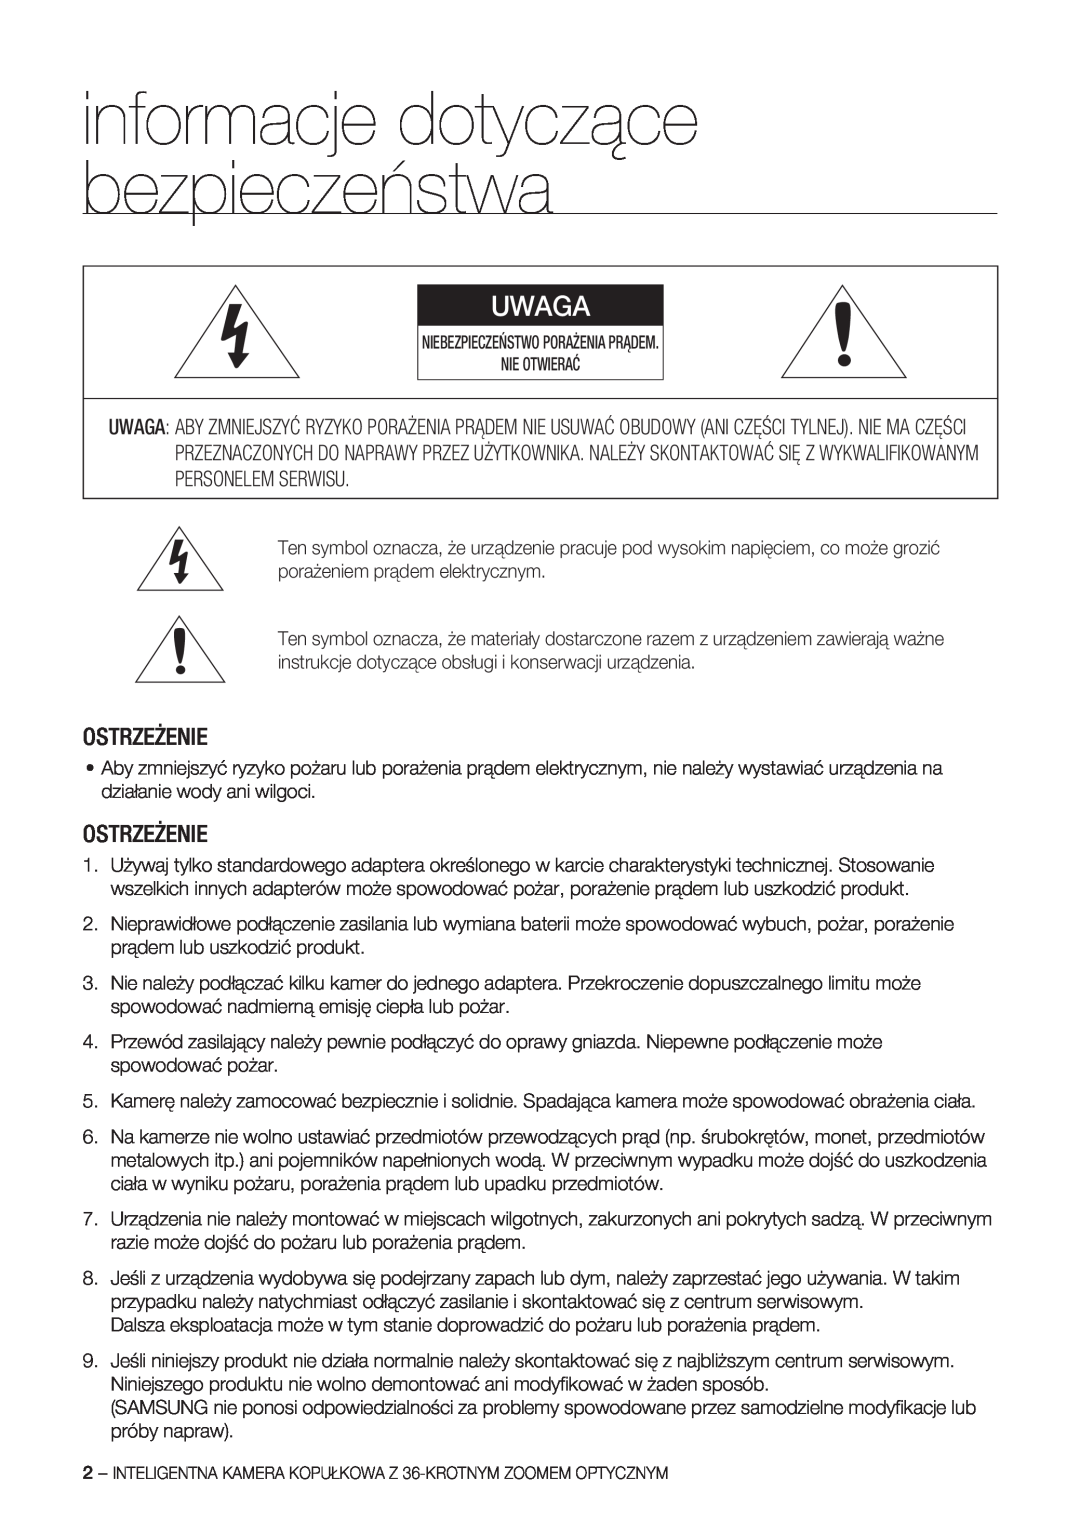 Samsung SCC-C7478P manual informacje dotyczące bezpieczeństwa, Uwaga, Ostrzeżenie 